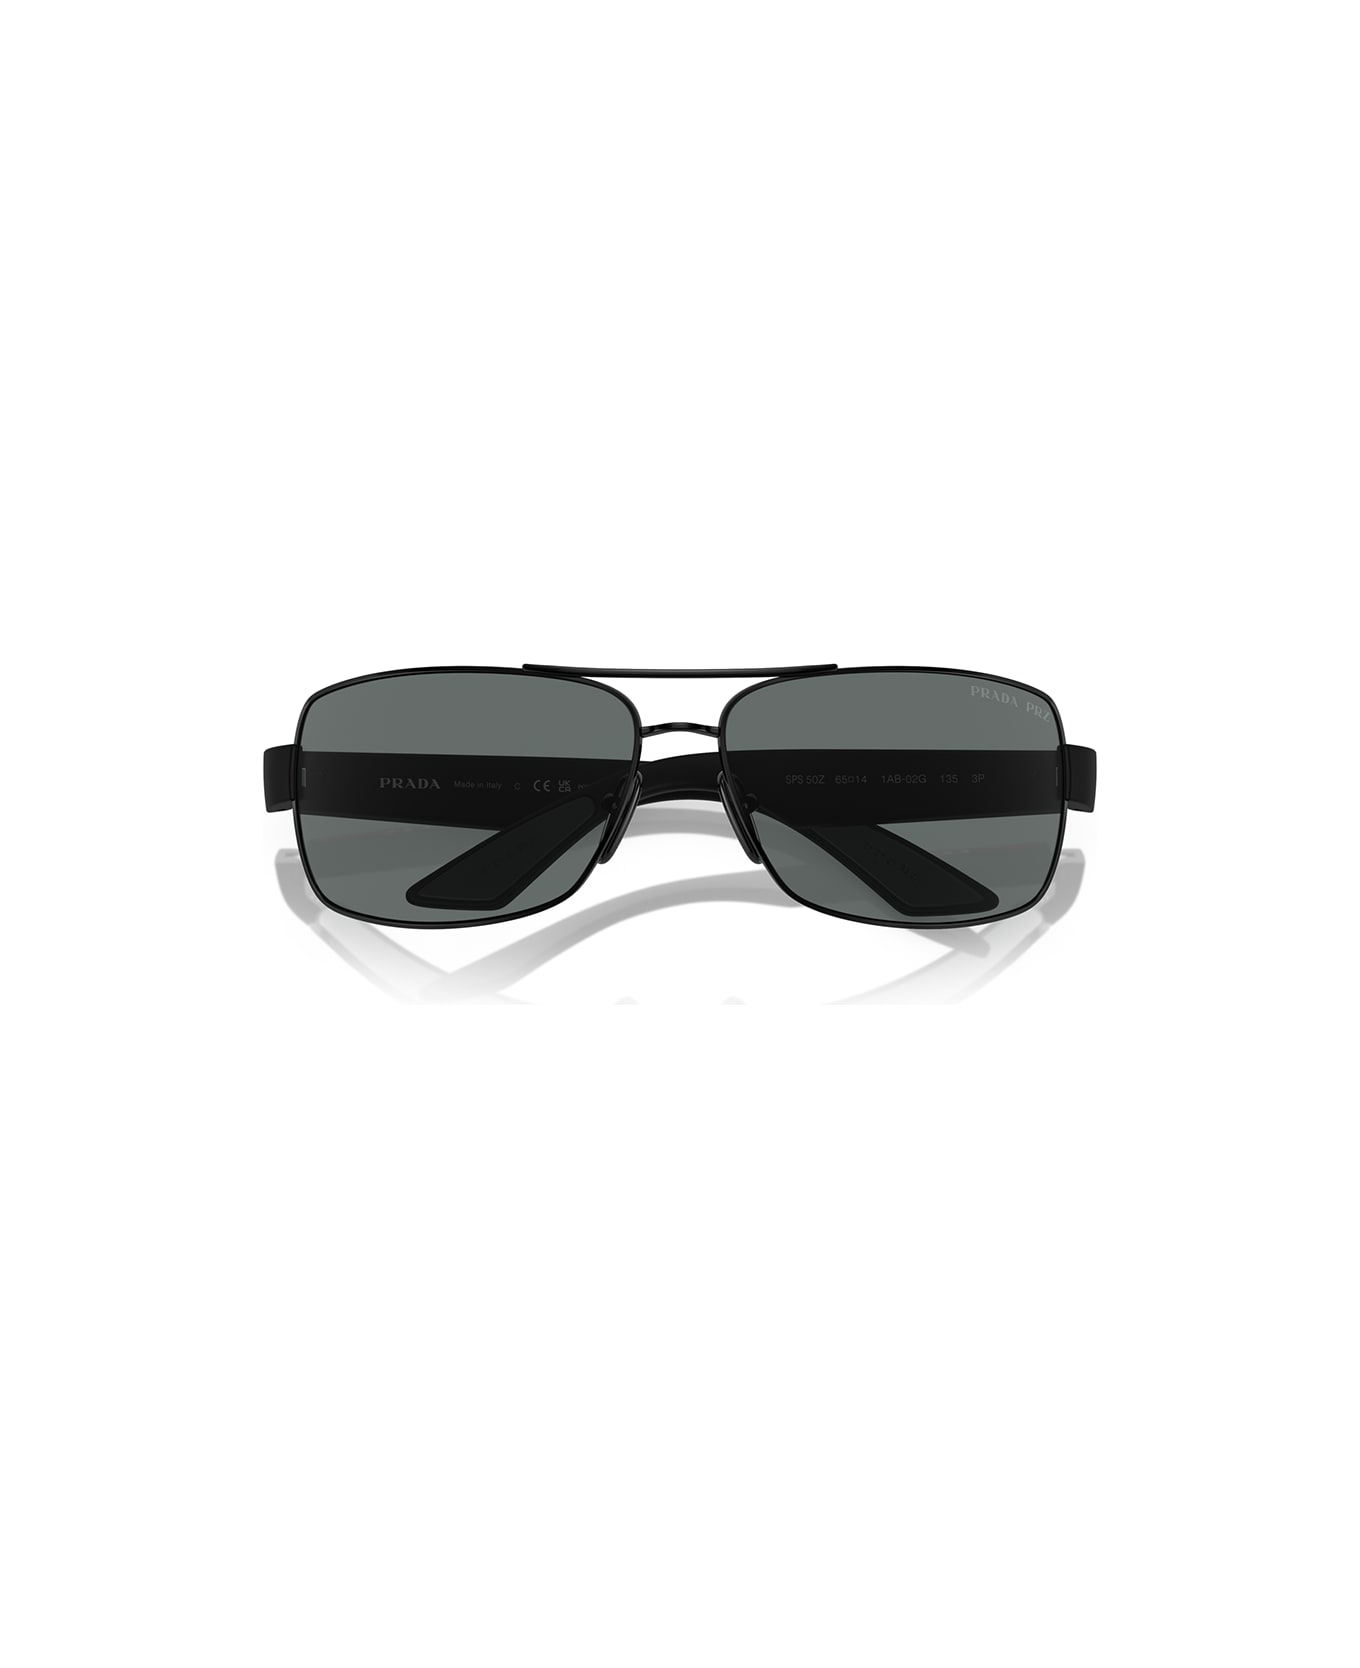 Prada Linea Rossa Sunglasses - Nero/Grigio